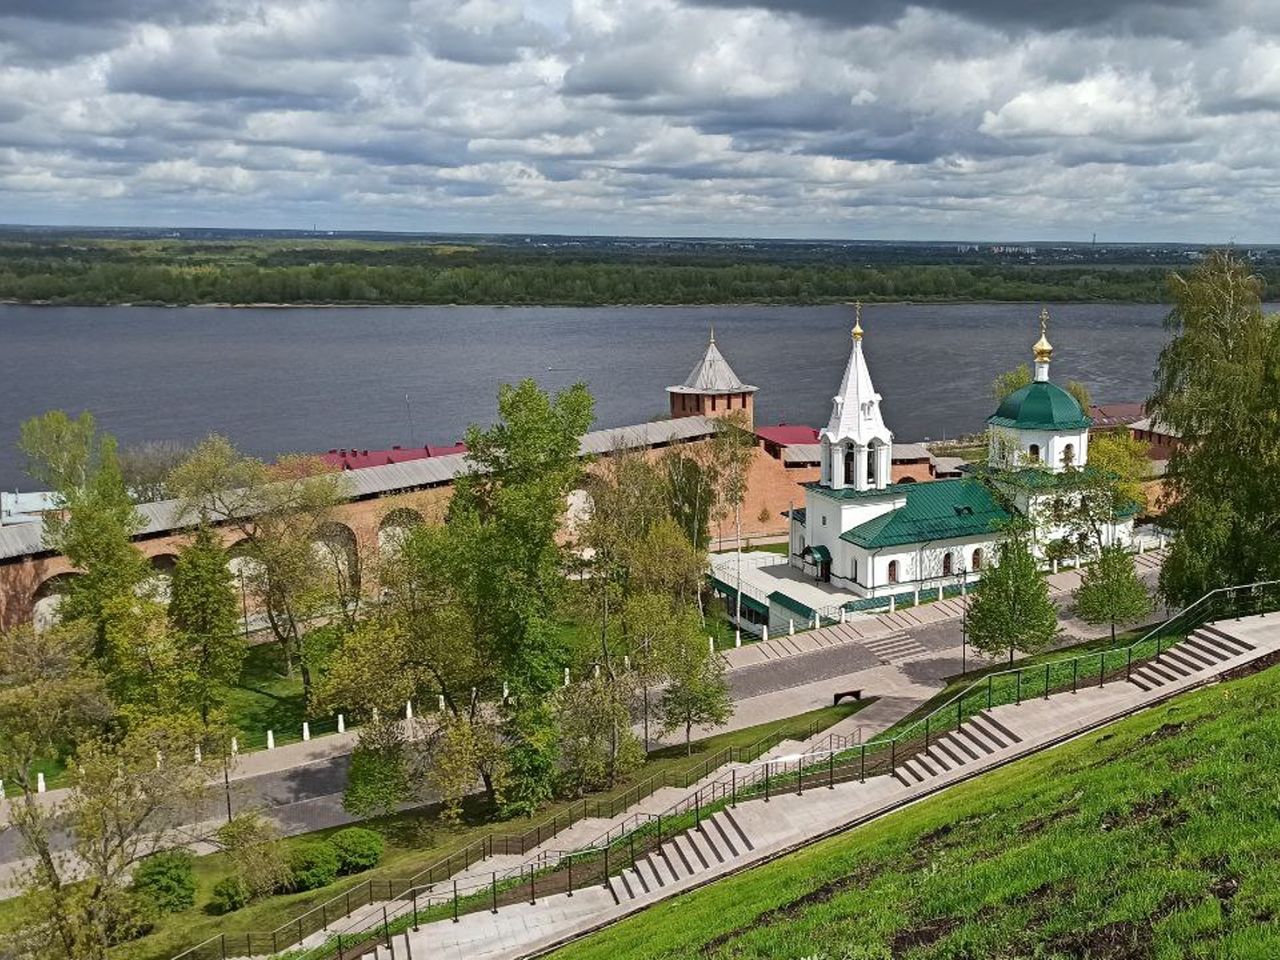 Прогулка по Нижегородскому кремлю | Цена 6000₽, отзывы, описание экскурсии